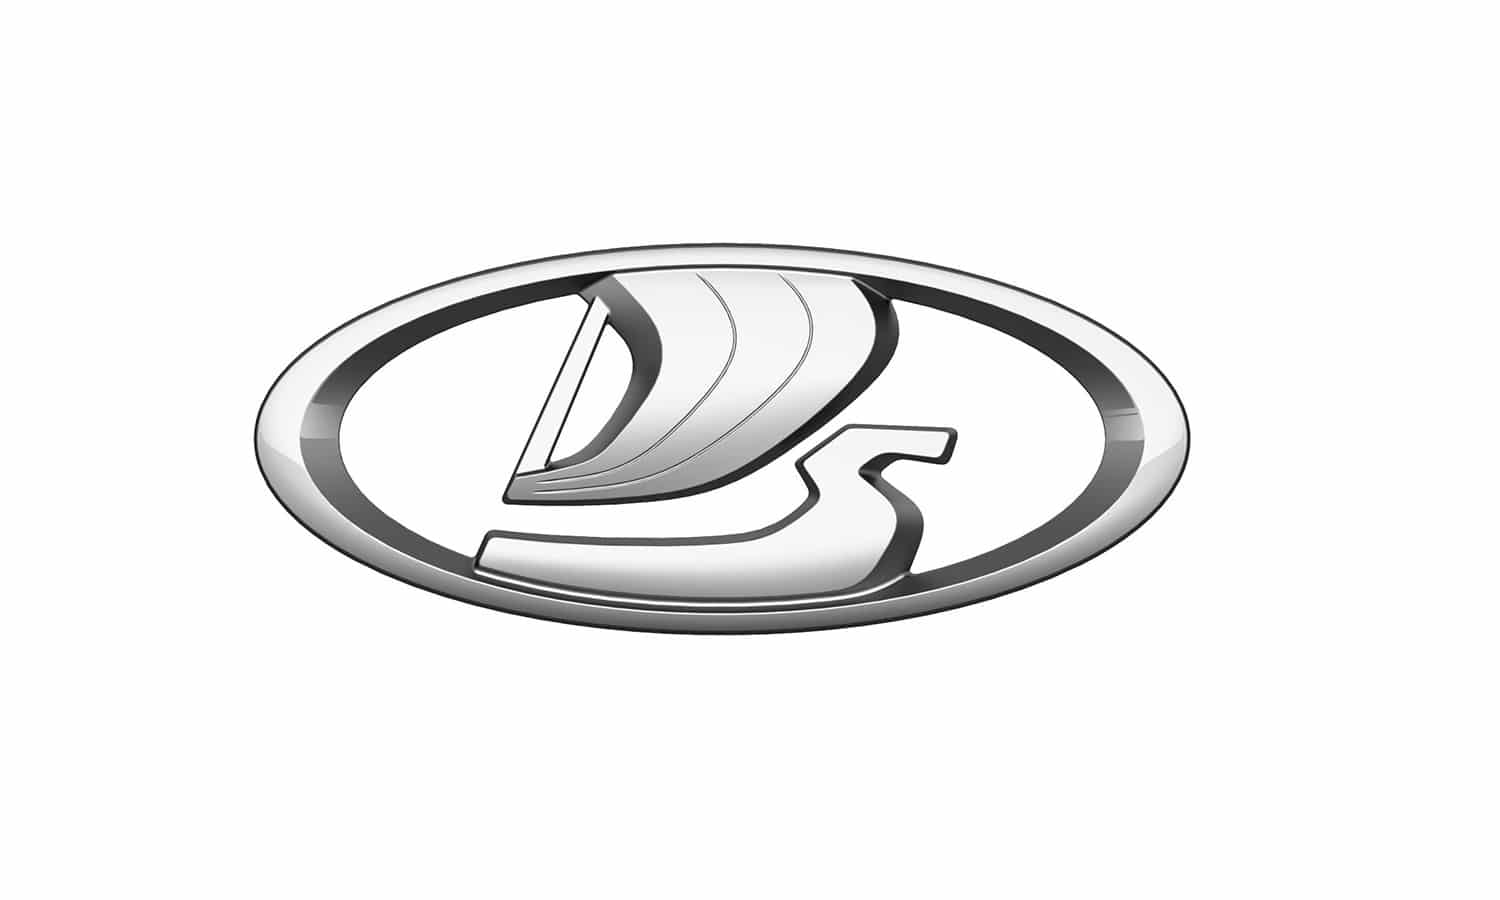 AutoVaz logo - General Motors - GM-AvtoVAZ